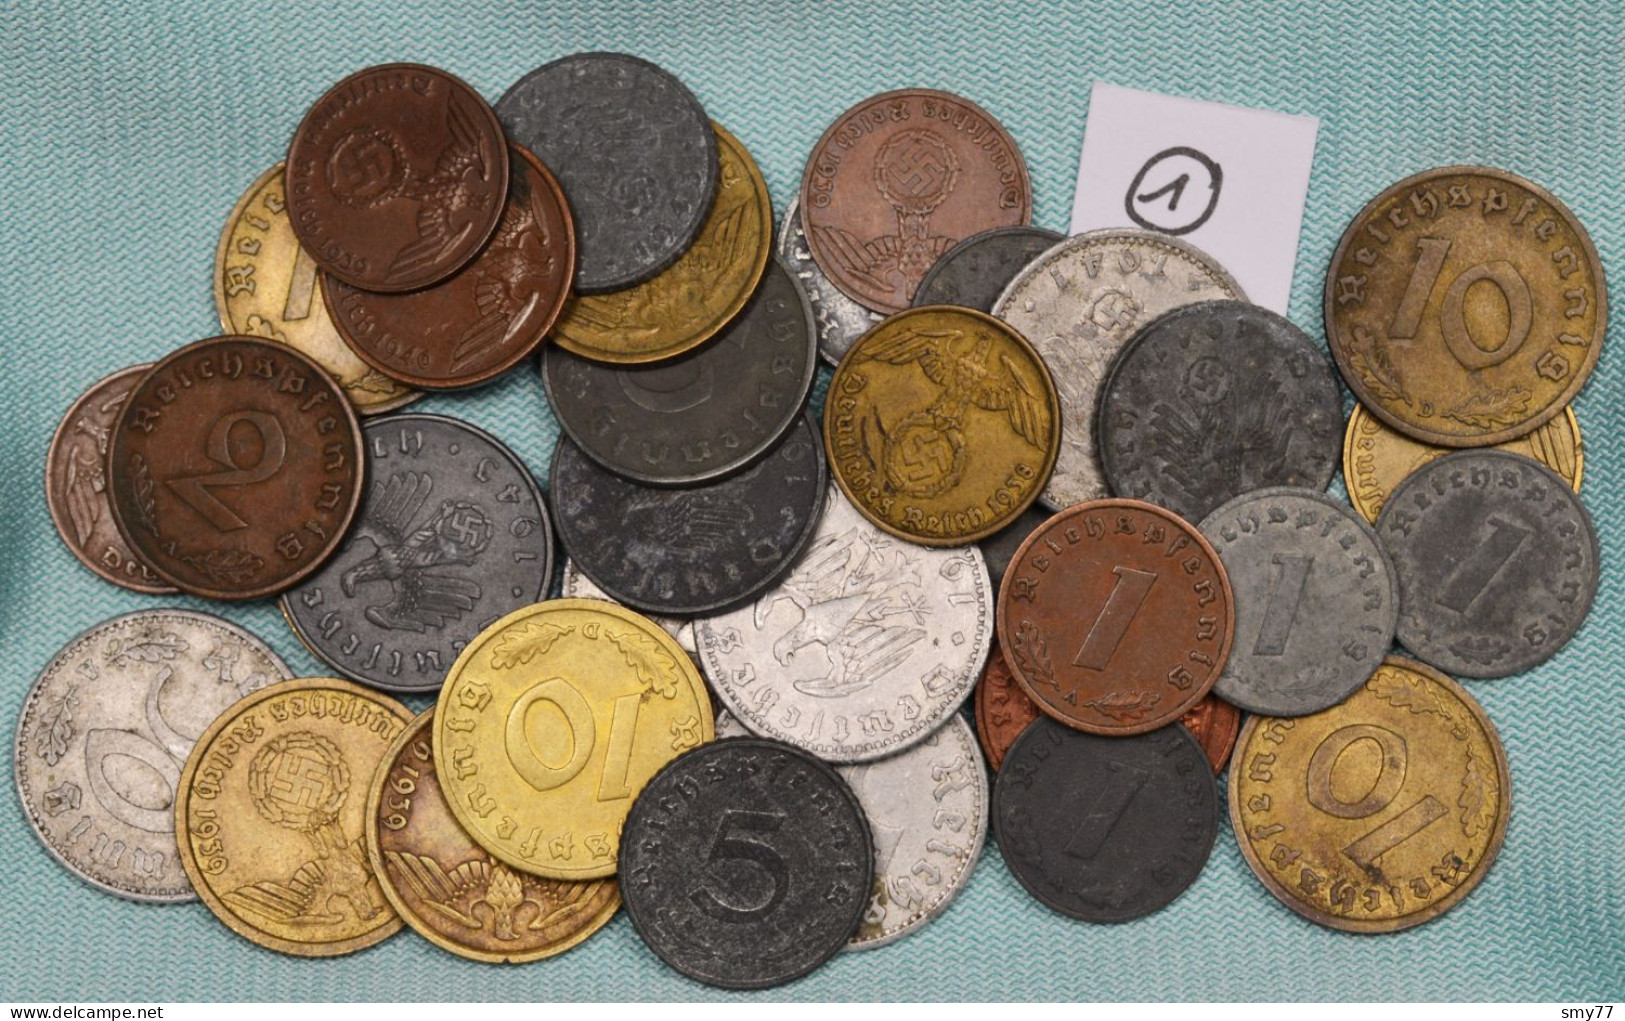 3. Reich (1) • Beautiful Lot / Konvolut With Coins In High Grade • Allemagne / Germany / Deutschland • [24-551] - Sammlungen